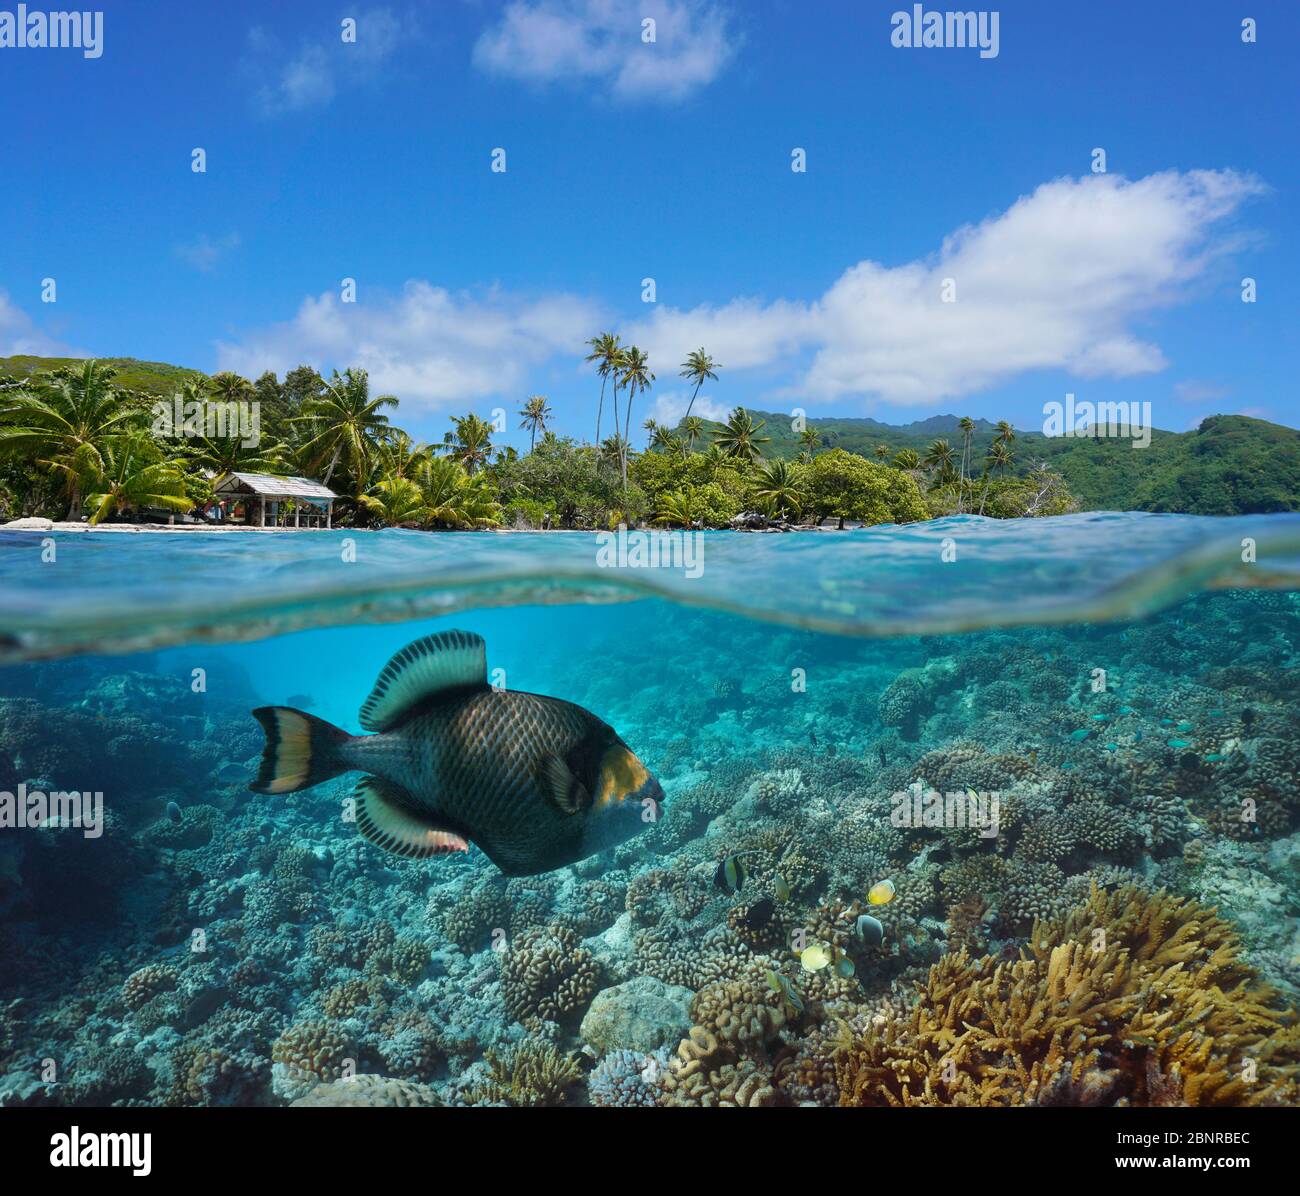 Costa tropicale e barriera corallina con pesci triggerfish titan sott'acqua, vista su e sotto la superficie dell'acqua, Polinesia francese, oceano Pacifico Foto Stock